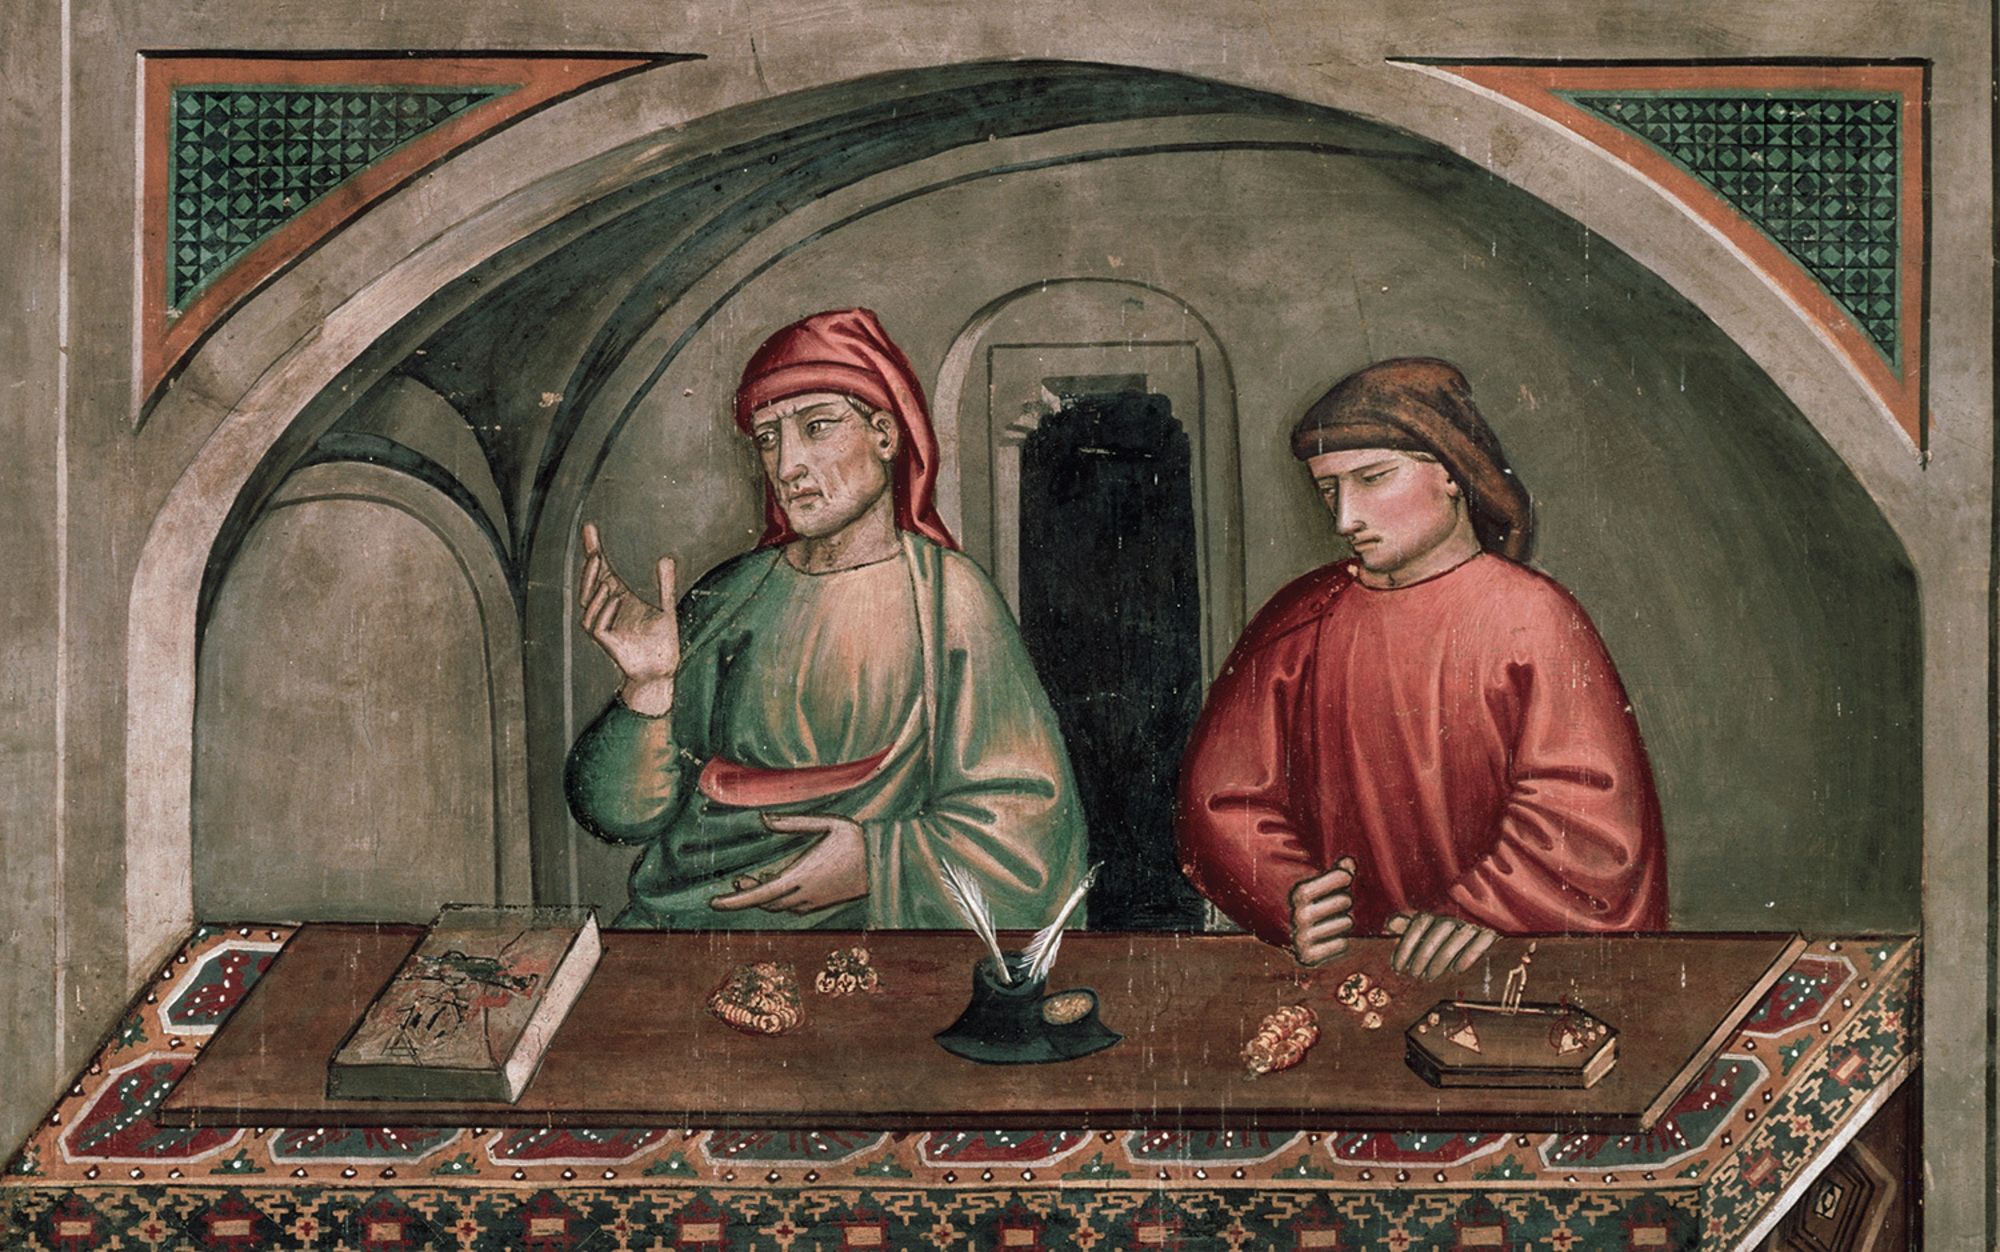 上图：意大利画家尼科洛·佩德罗·吉利尼（Niccolo' di Pietro Gerini）于1390-1399年在意大利普拉托的圣弗朗西斯科教堂（Church of San Francesco, Prato）创作的《圣马太的生活场景 Calling of St Matthew the Evangelist, scenes from the Life of St Matthew》。使徒马太在中世纪被当作银行家和会计师的守护圣人。